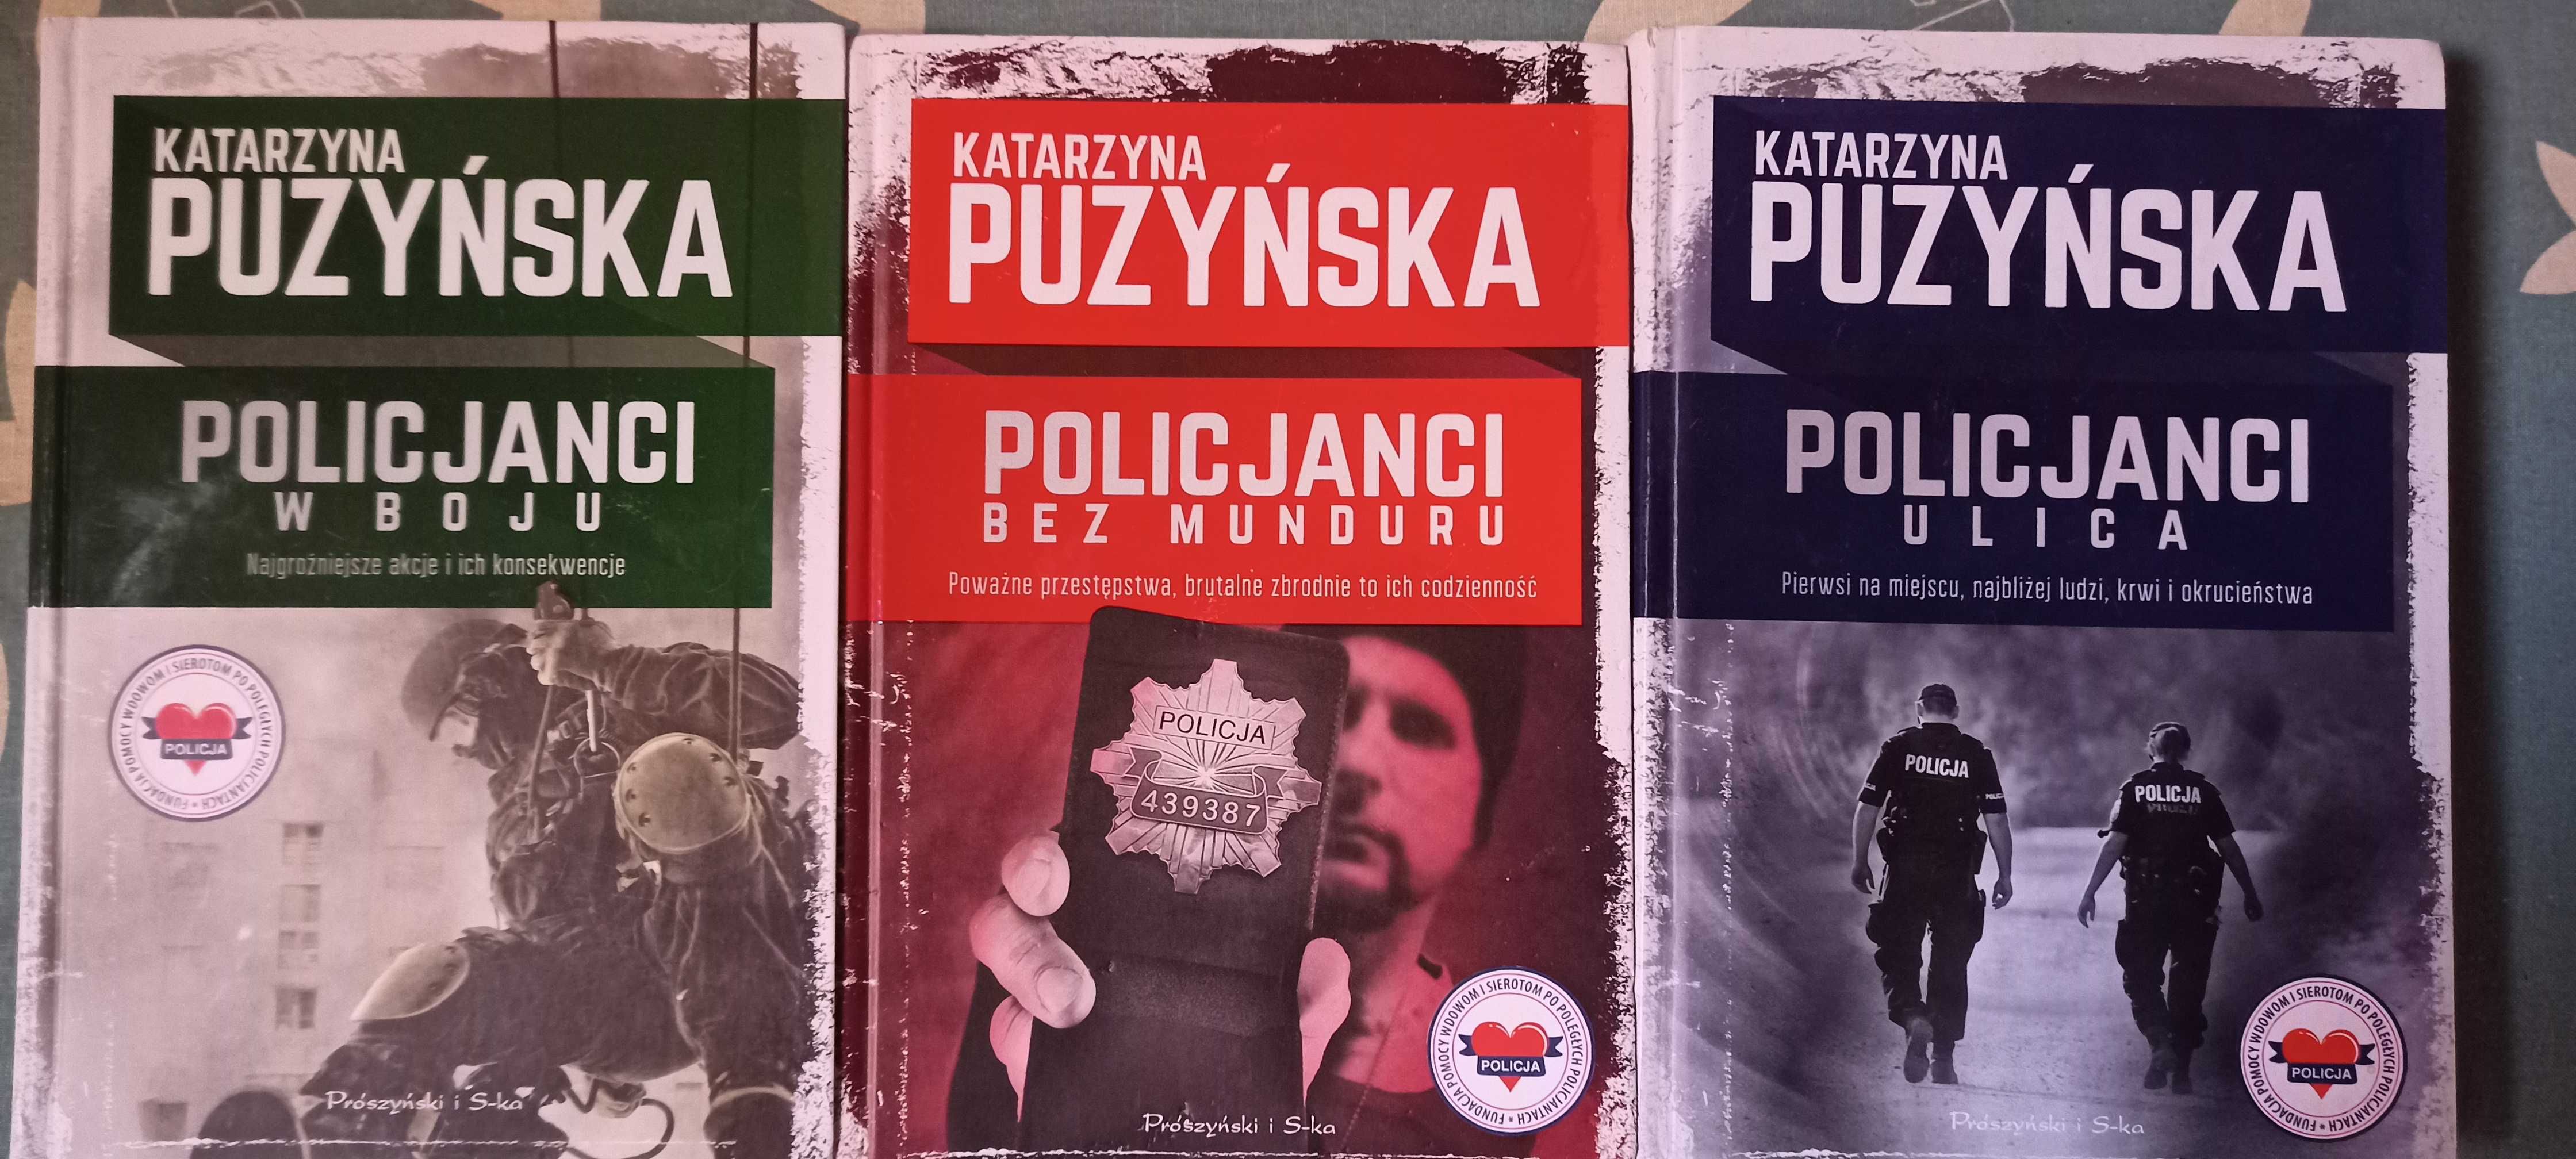 Katarzyna Puzyńska-Policjanci